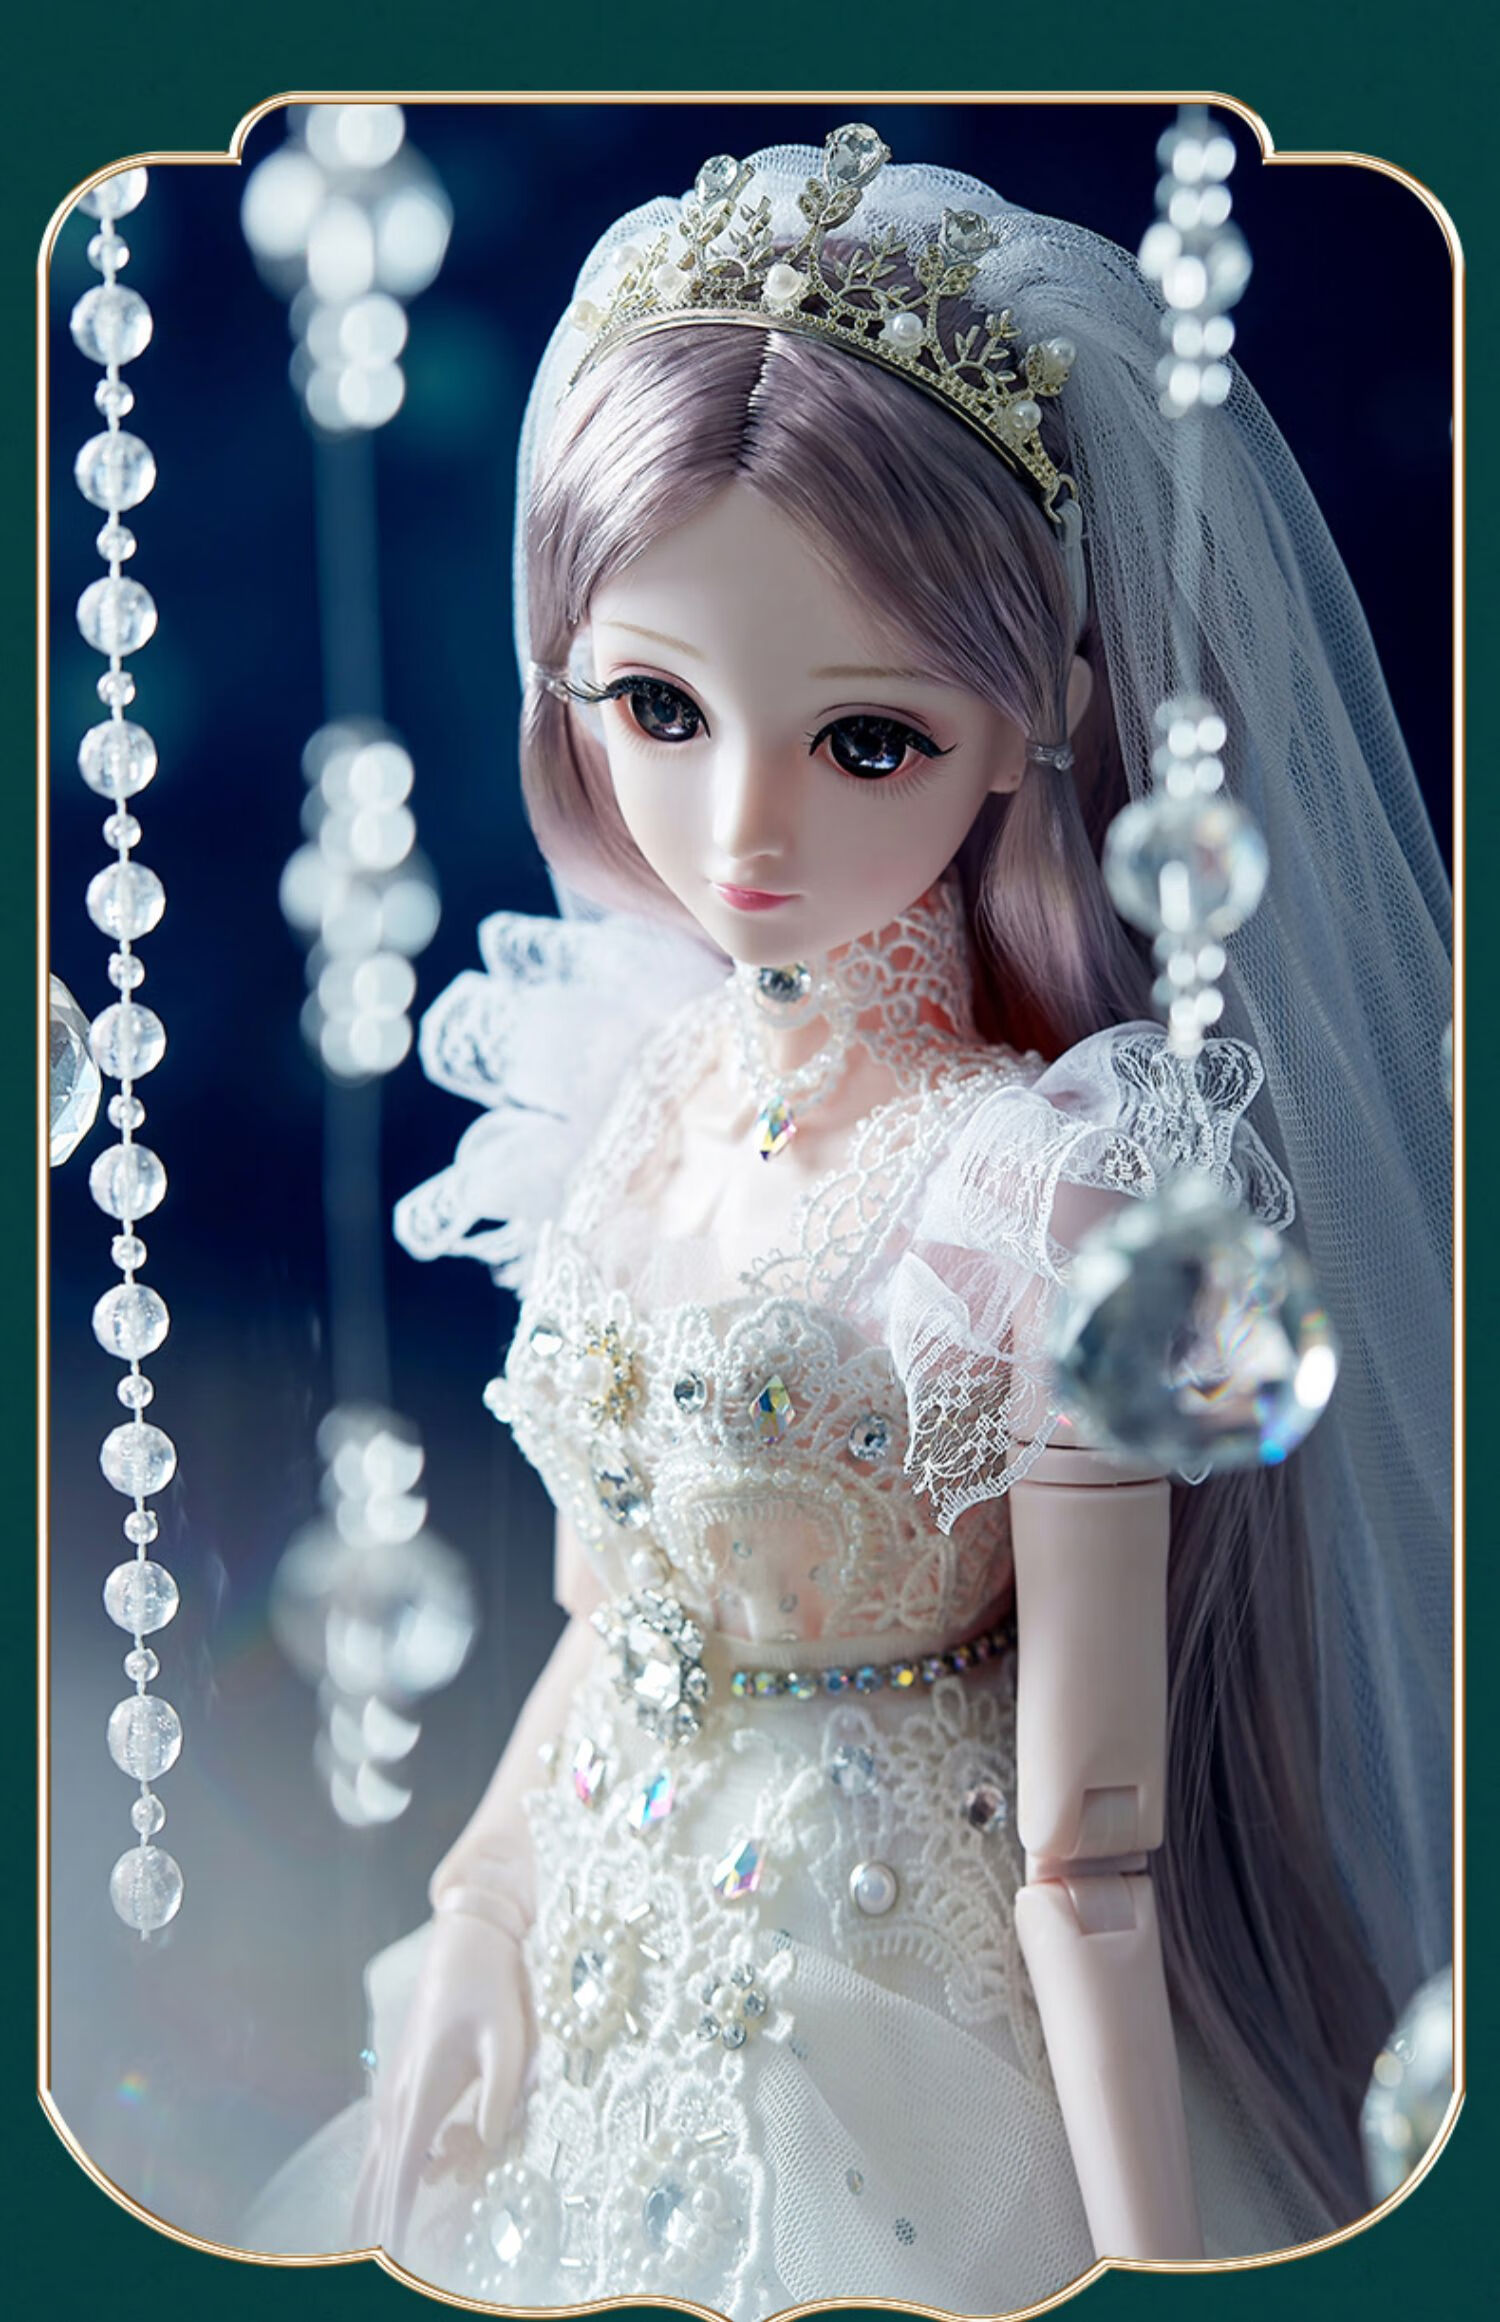 圣诞节礼物大型彤乐芭比洋娃娃玩具套装2021新款公主女孩超大号仿真